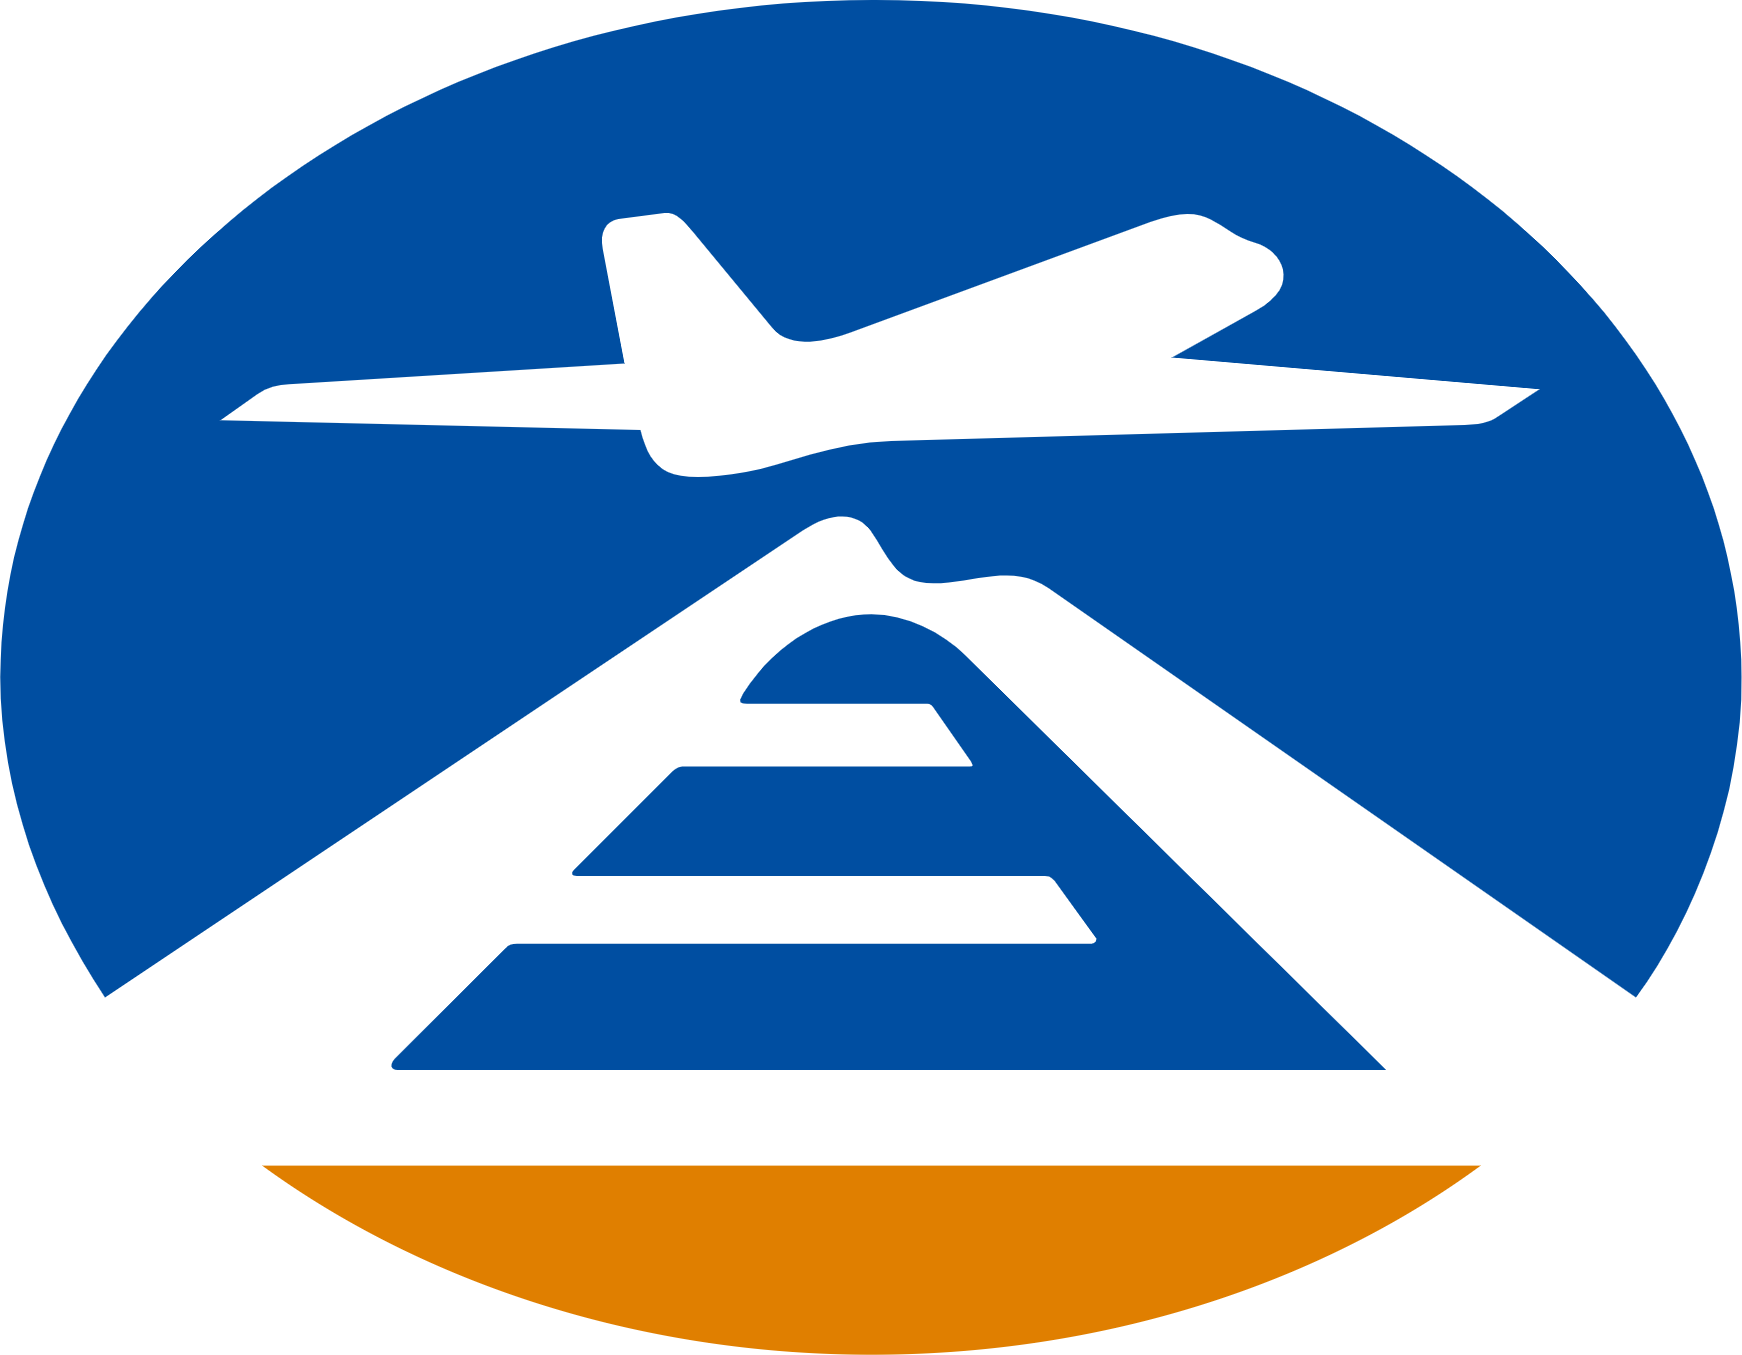 Beijing Airport logo (transparent PNG)